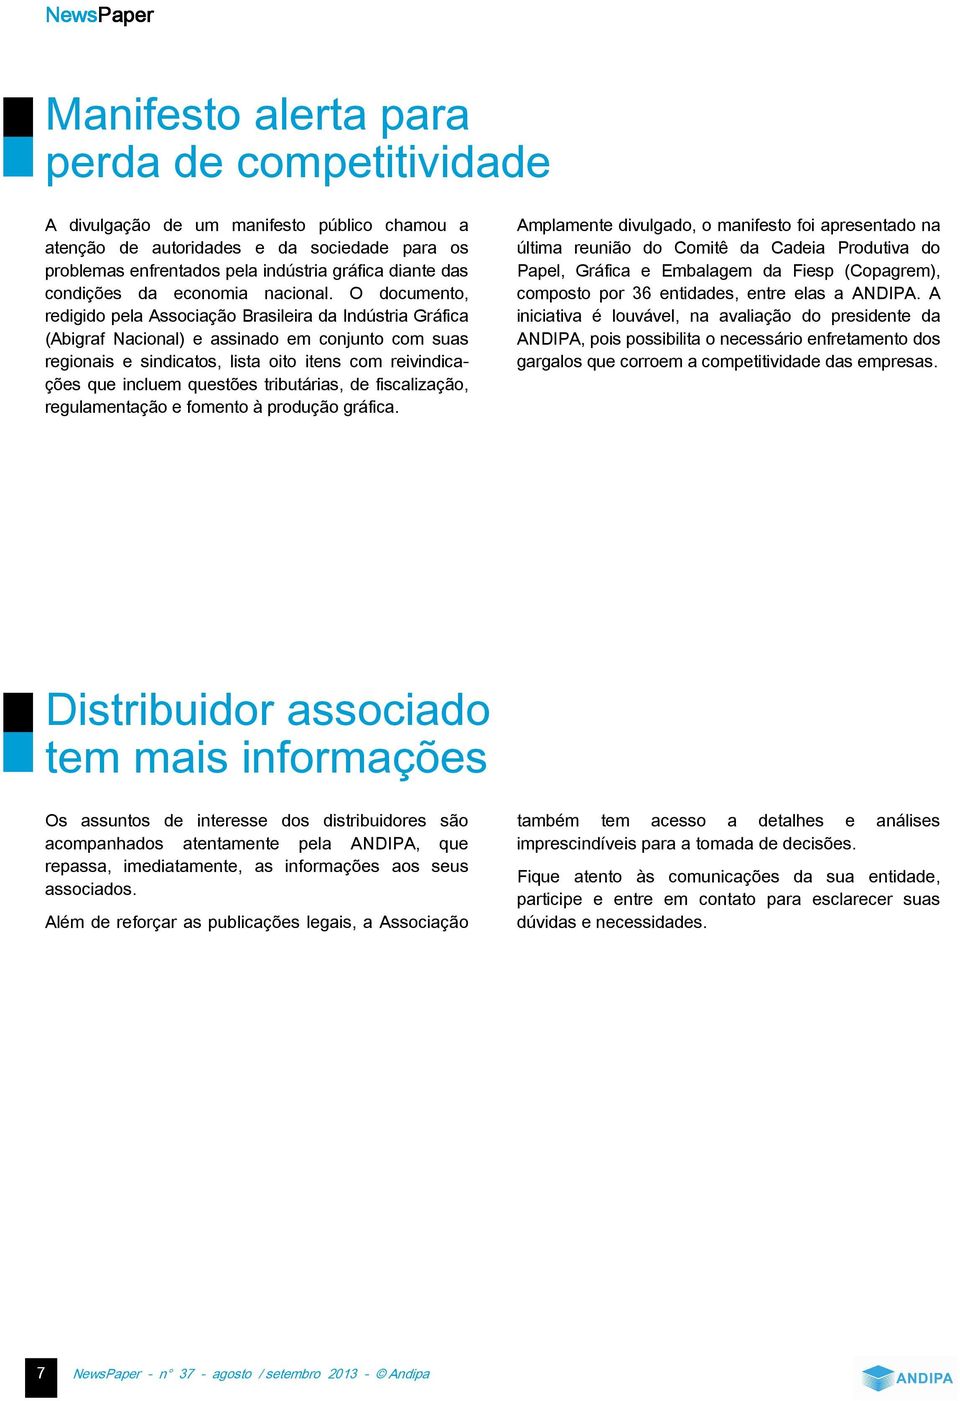 O documento, redigido pela Associação Brasileira da Indústria Gráfica (Abigraf Nacional e assinado em conjunto com suas regionais e sindicatos, lista oito itens com reivindicações que incluem